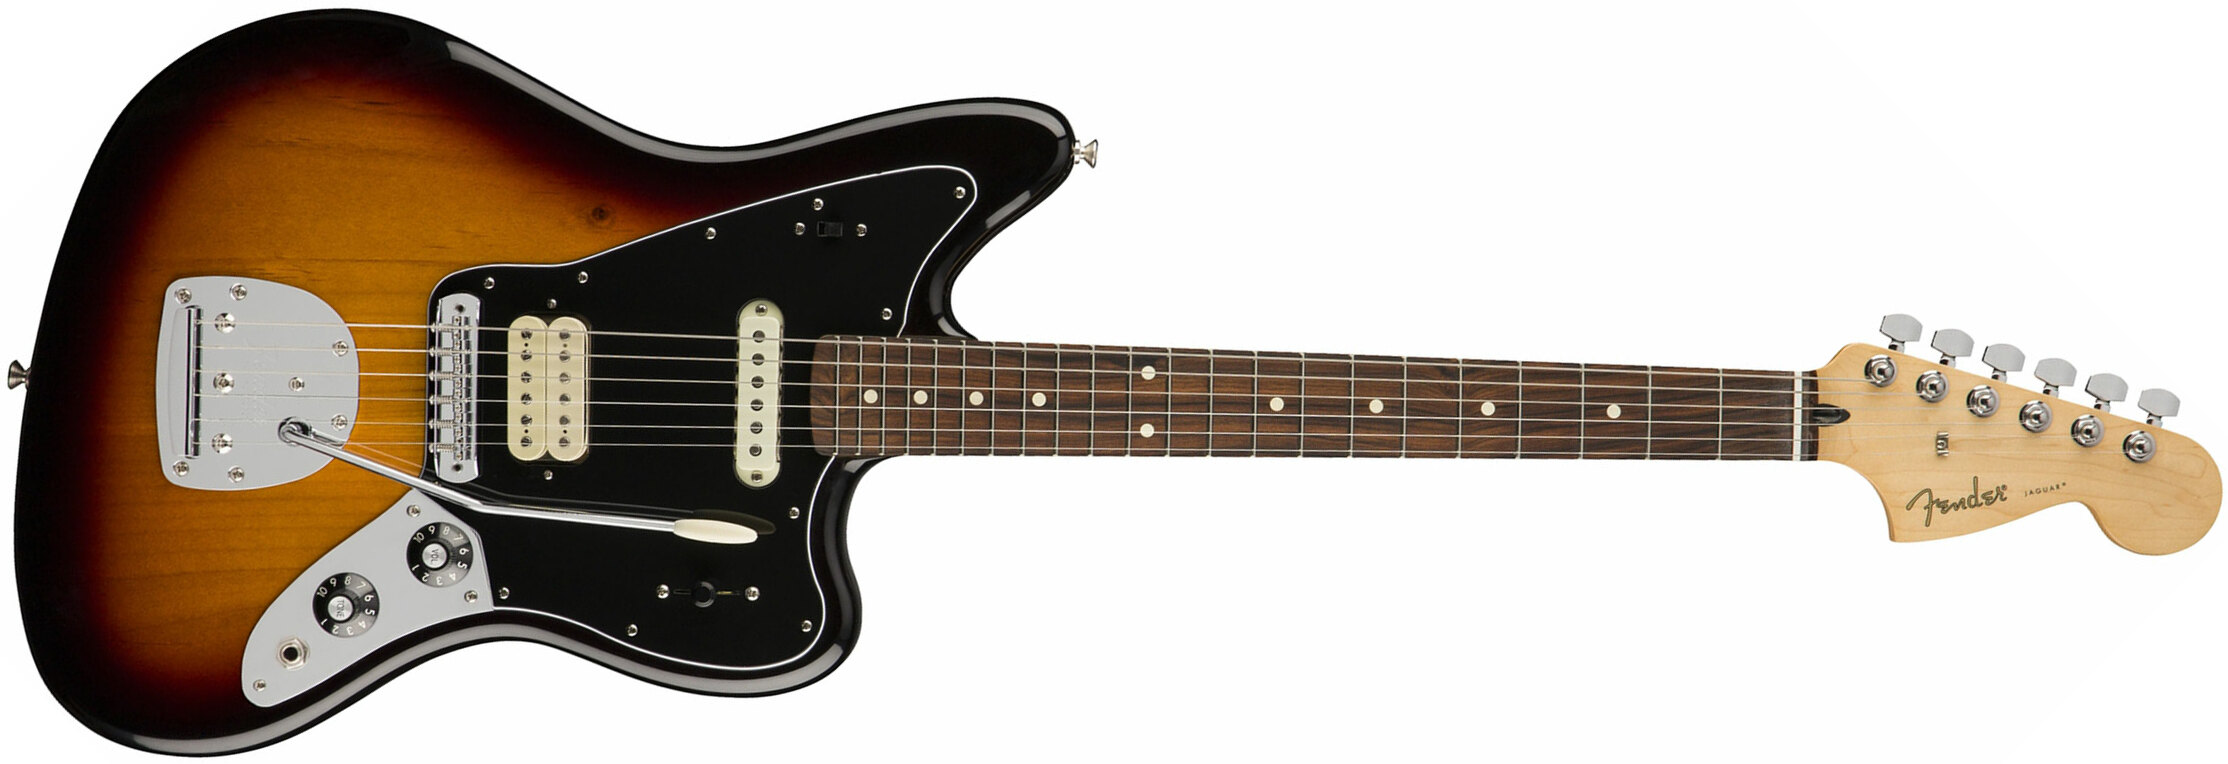 Fender Jaguar Player Mex Hs Pf - 3-color Sunburst - Guitarra electrica retro rock - Main picture